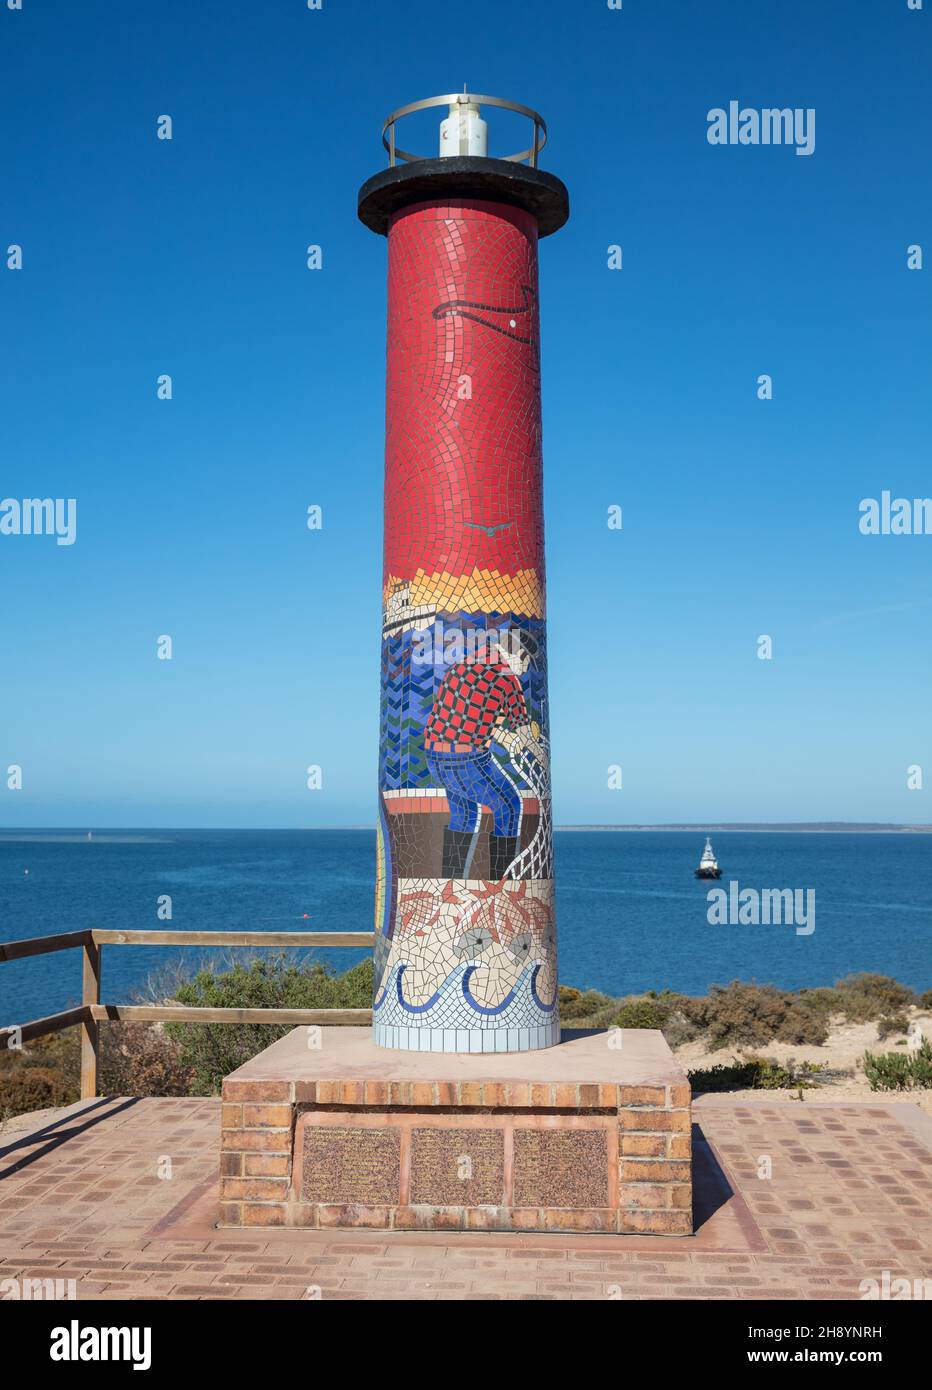 THEVENARD, AUSTRALIEN - 11. Feb 2020: Eine szenische Aufnahme einer Gedenklichtskulptur für Einheimische, die bei der Arbeit auf See ihr Leben verloren haben Stockfoto